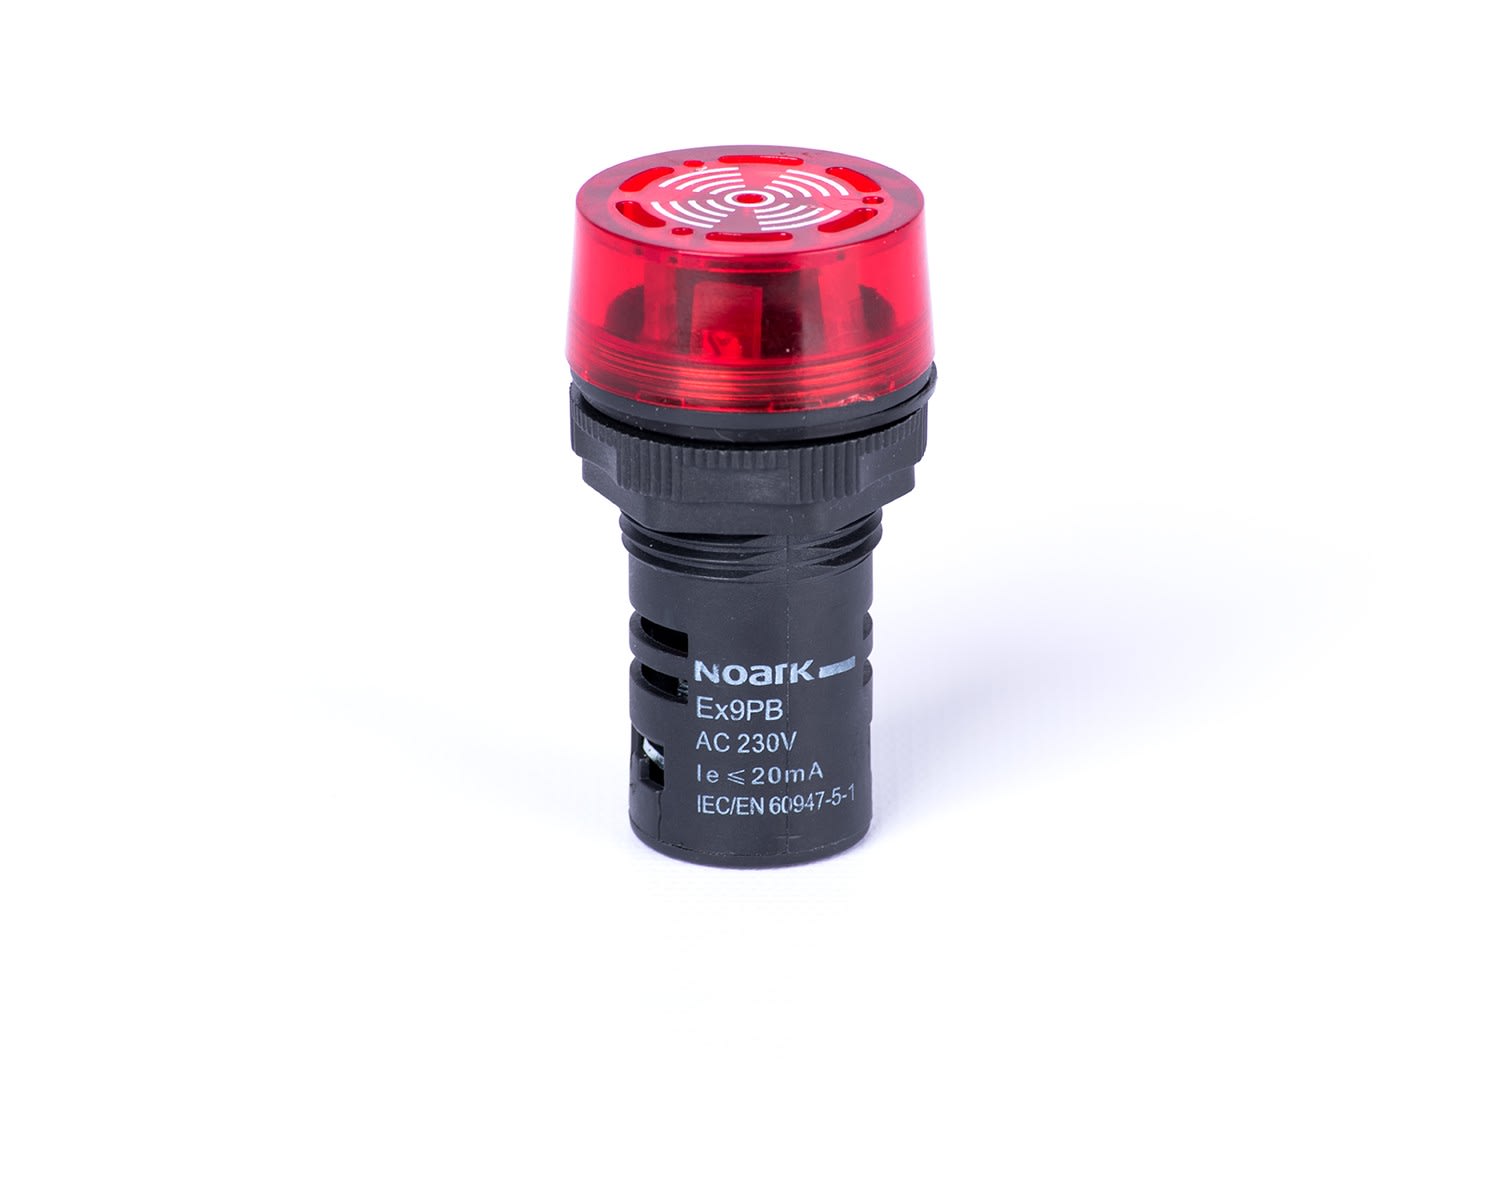 Madenr - Voyant buzzer Ex9PB clignotant 36 V AC/DC, avec éclairage LED, rouge